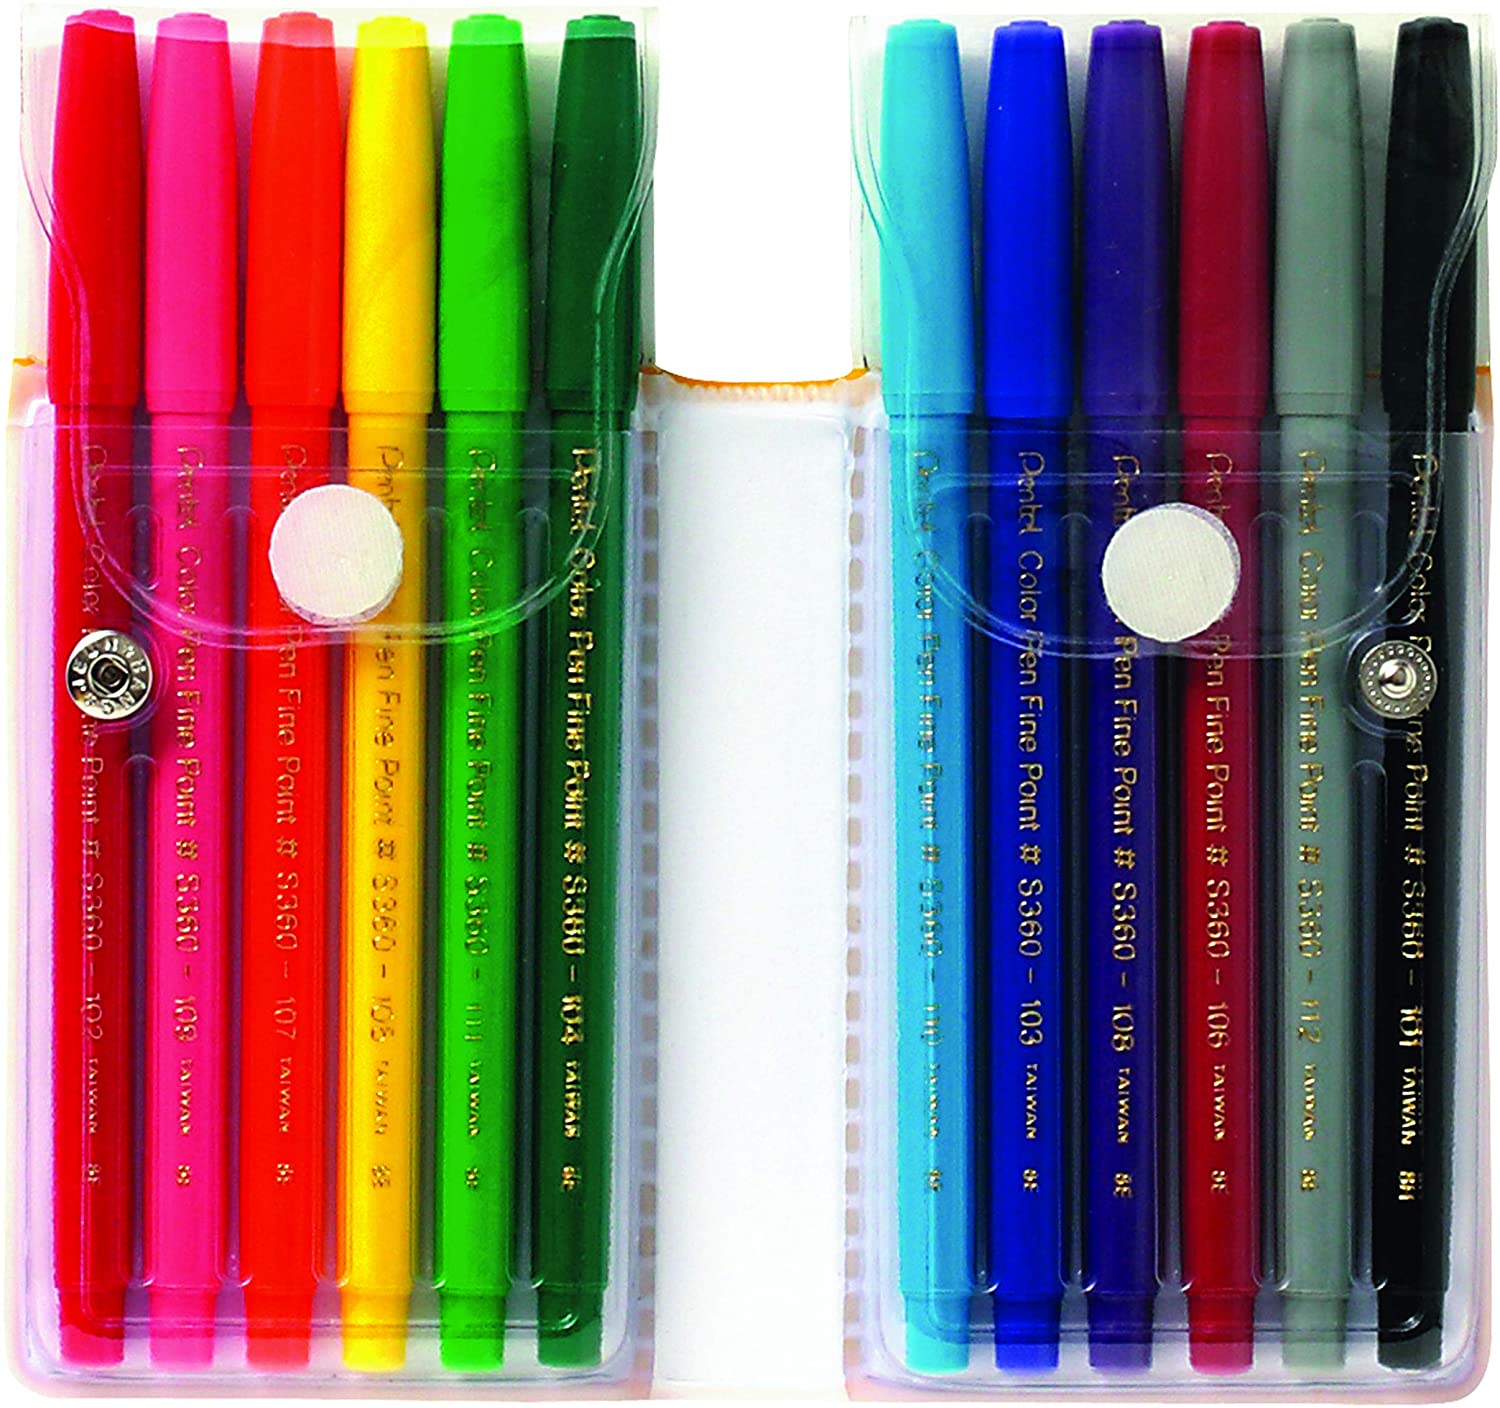 Pentel Art Color Pen Marker Set Of 12 Pieces